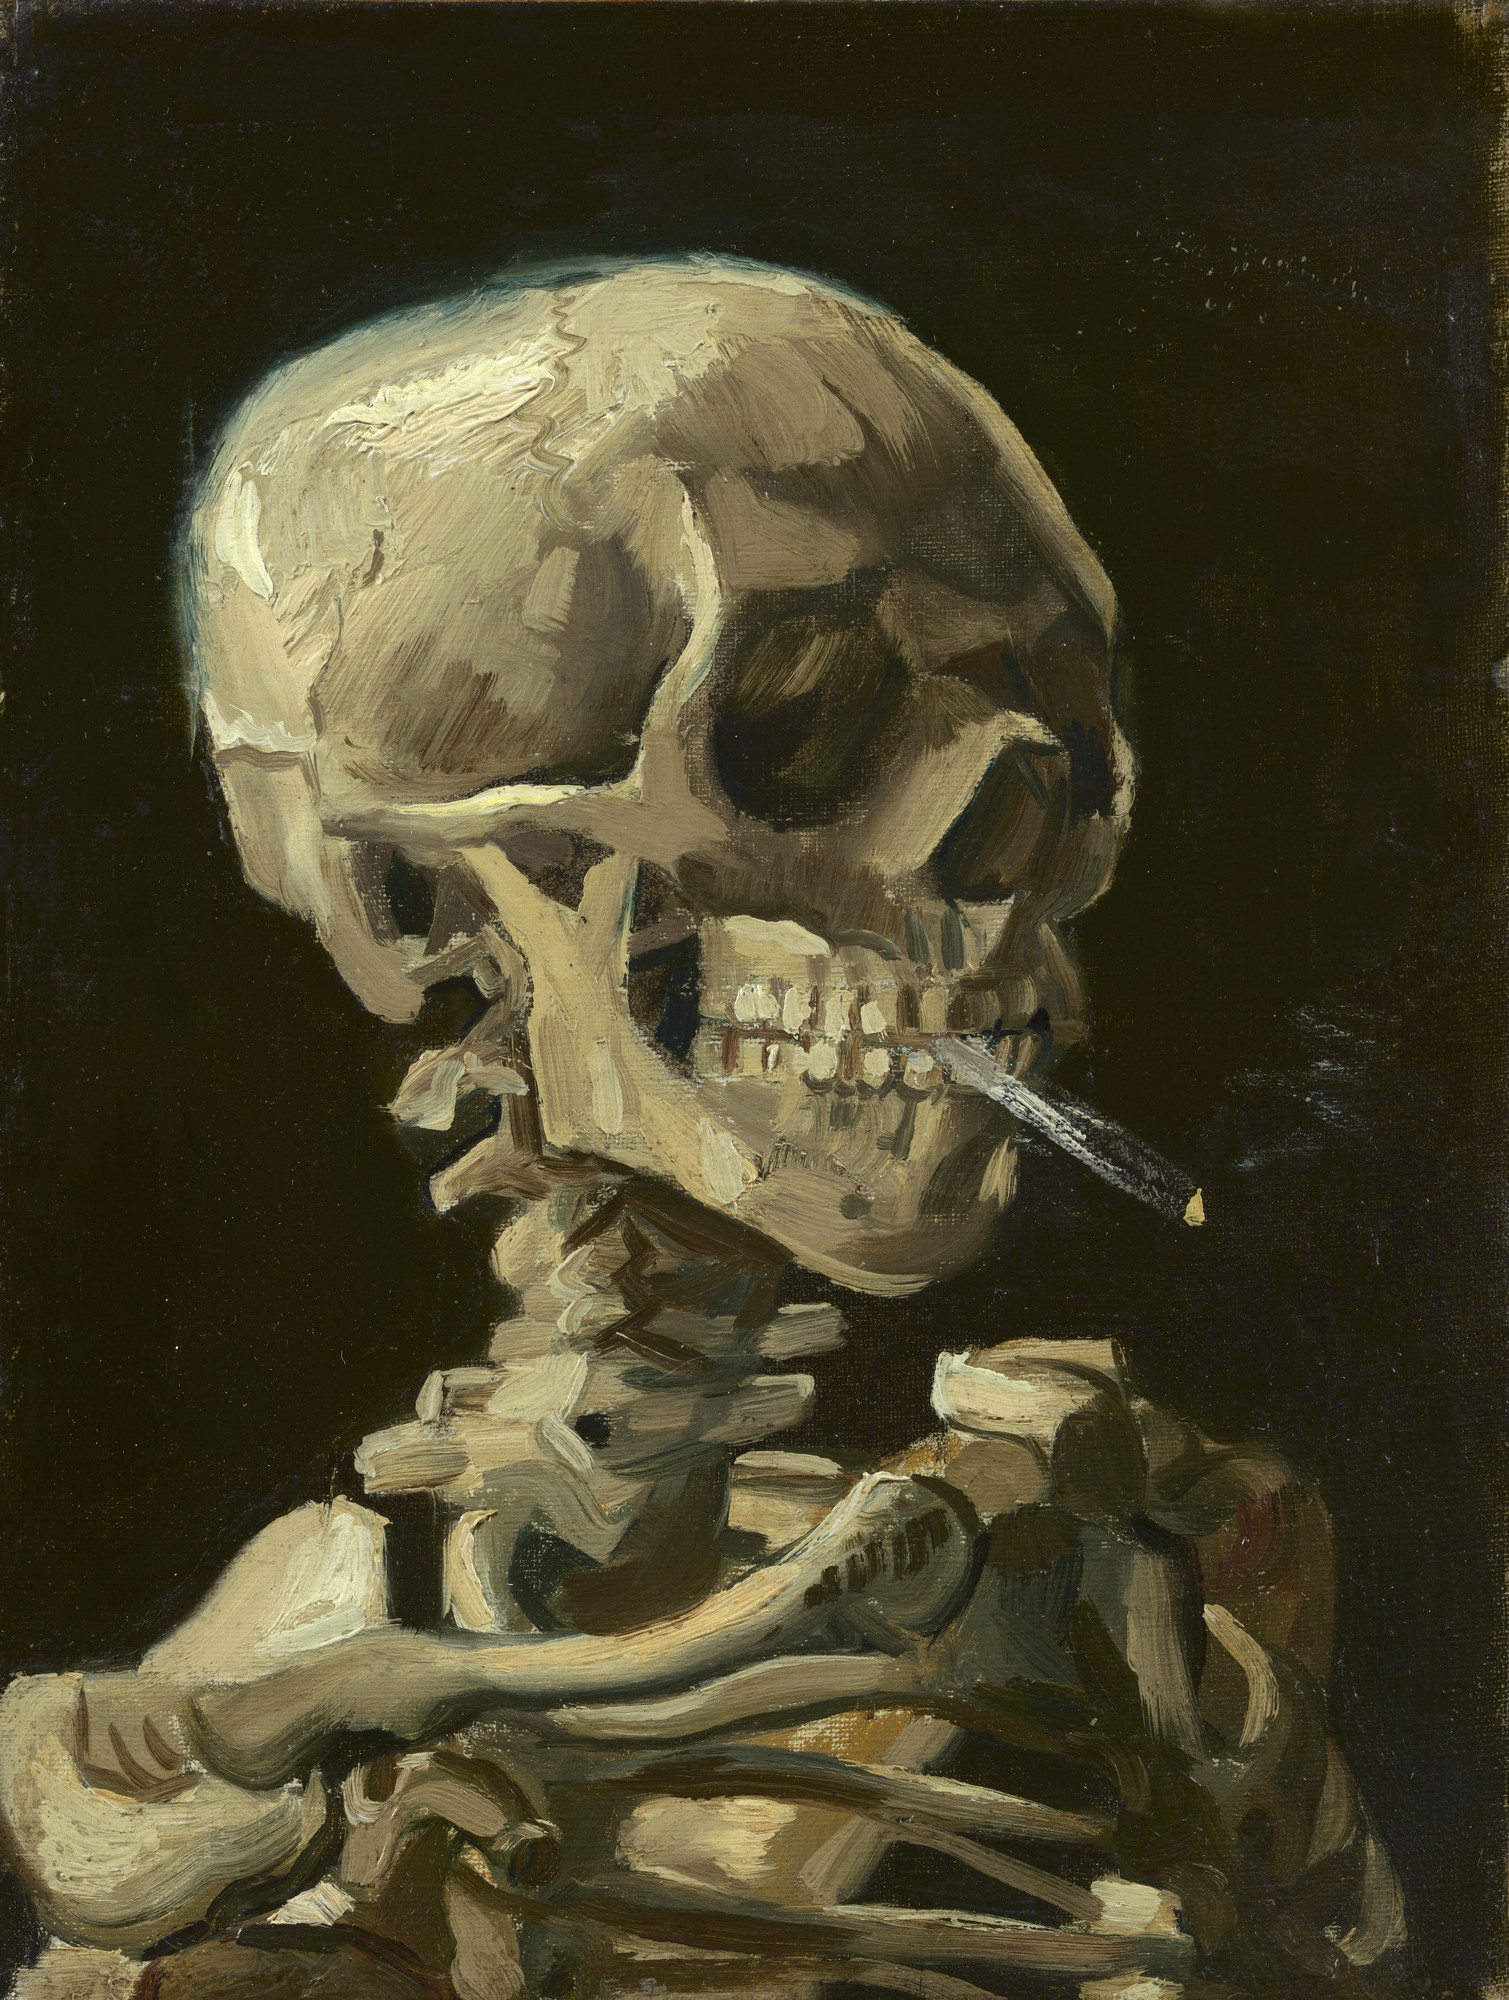 《叼烟的骷髅》文森特·梵高画作介绍及画作含义/创作背景